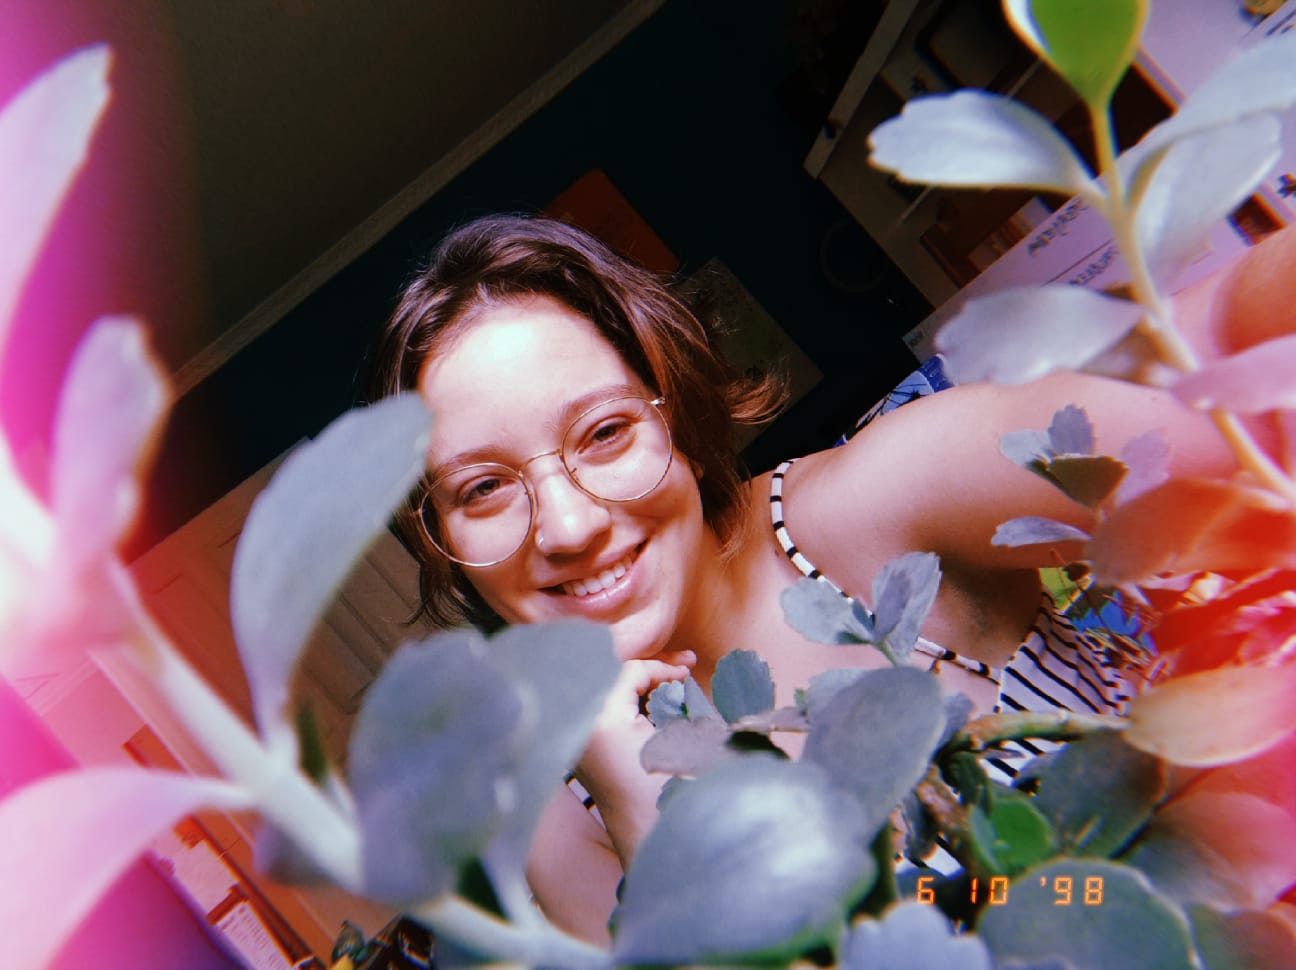 uma foto minha sorrindo, mas a camera tá atrás de um vaso de plantas, então tem várias plantinhas entre a camera e eu, fazendo tipo uma moldura pro meu rosto